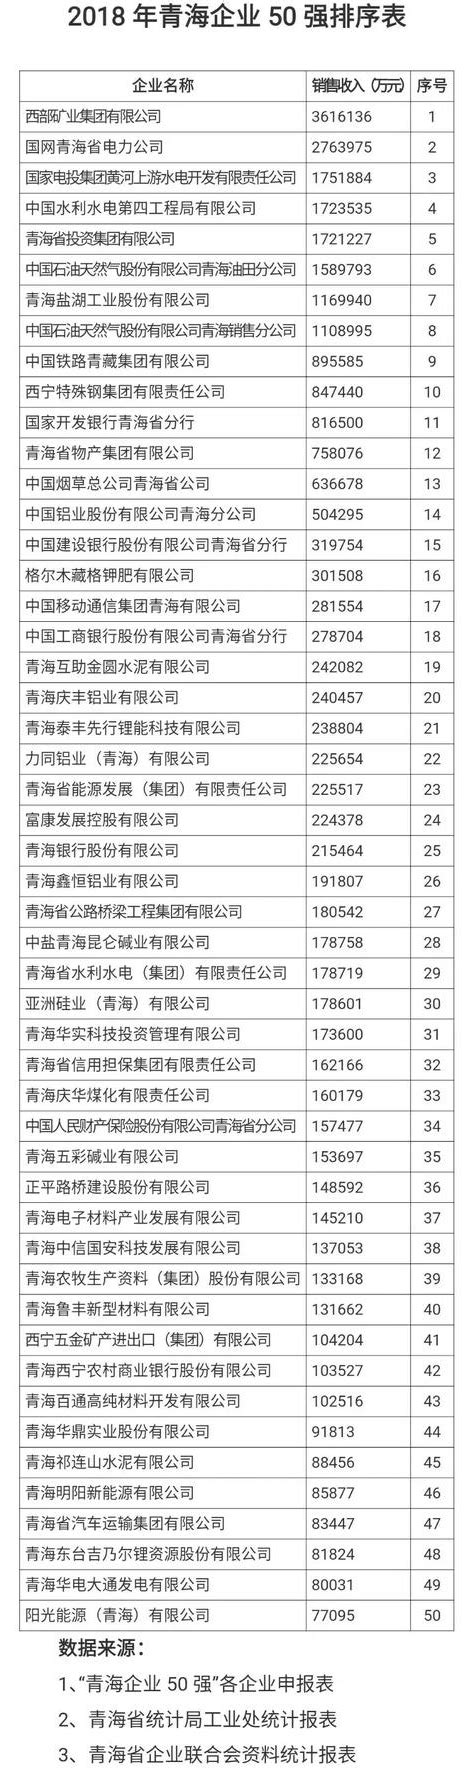 2019年青海省企业50强排行榜-排行榜-中商情报网